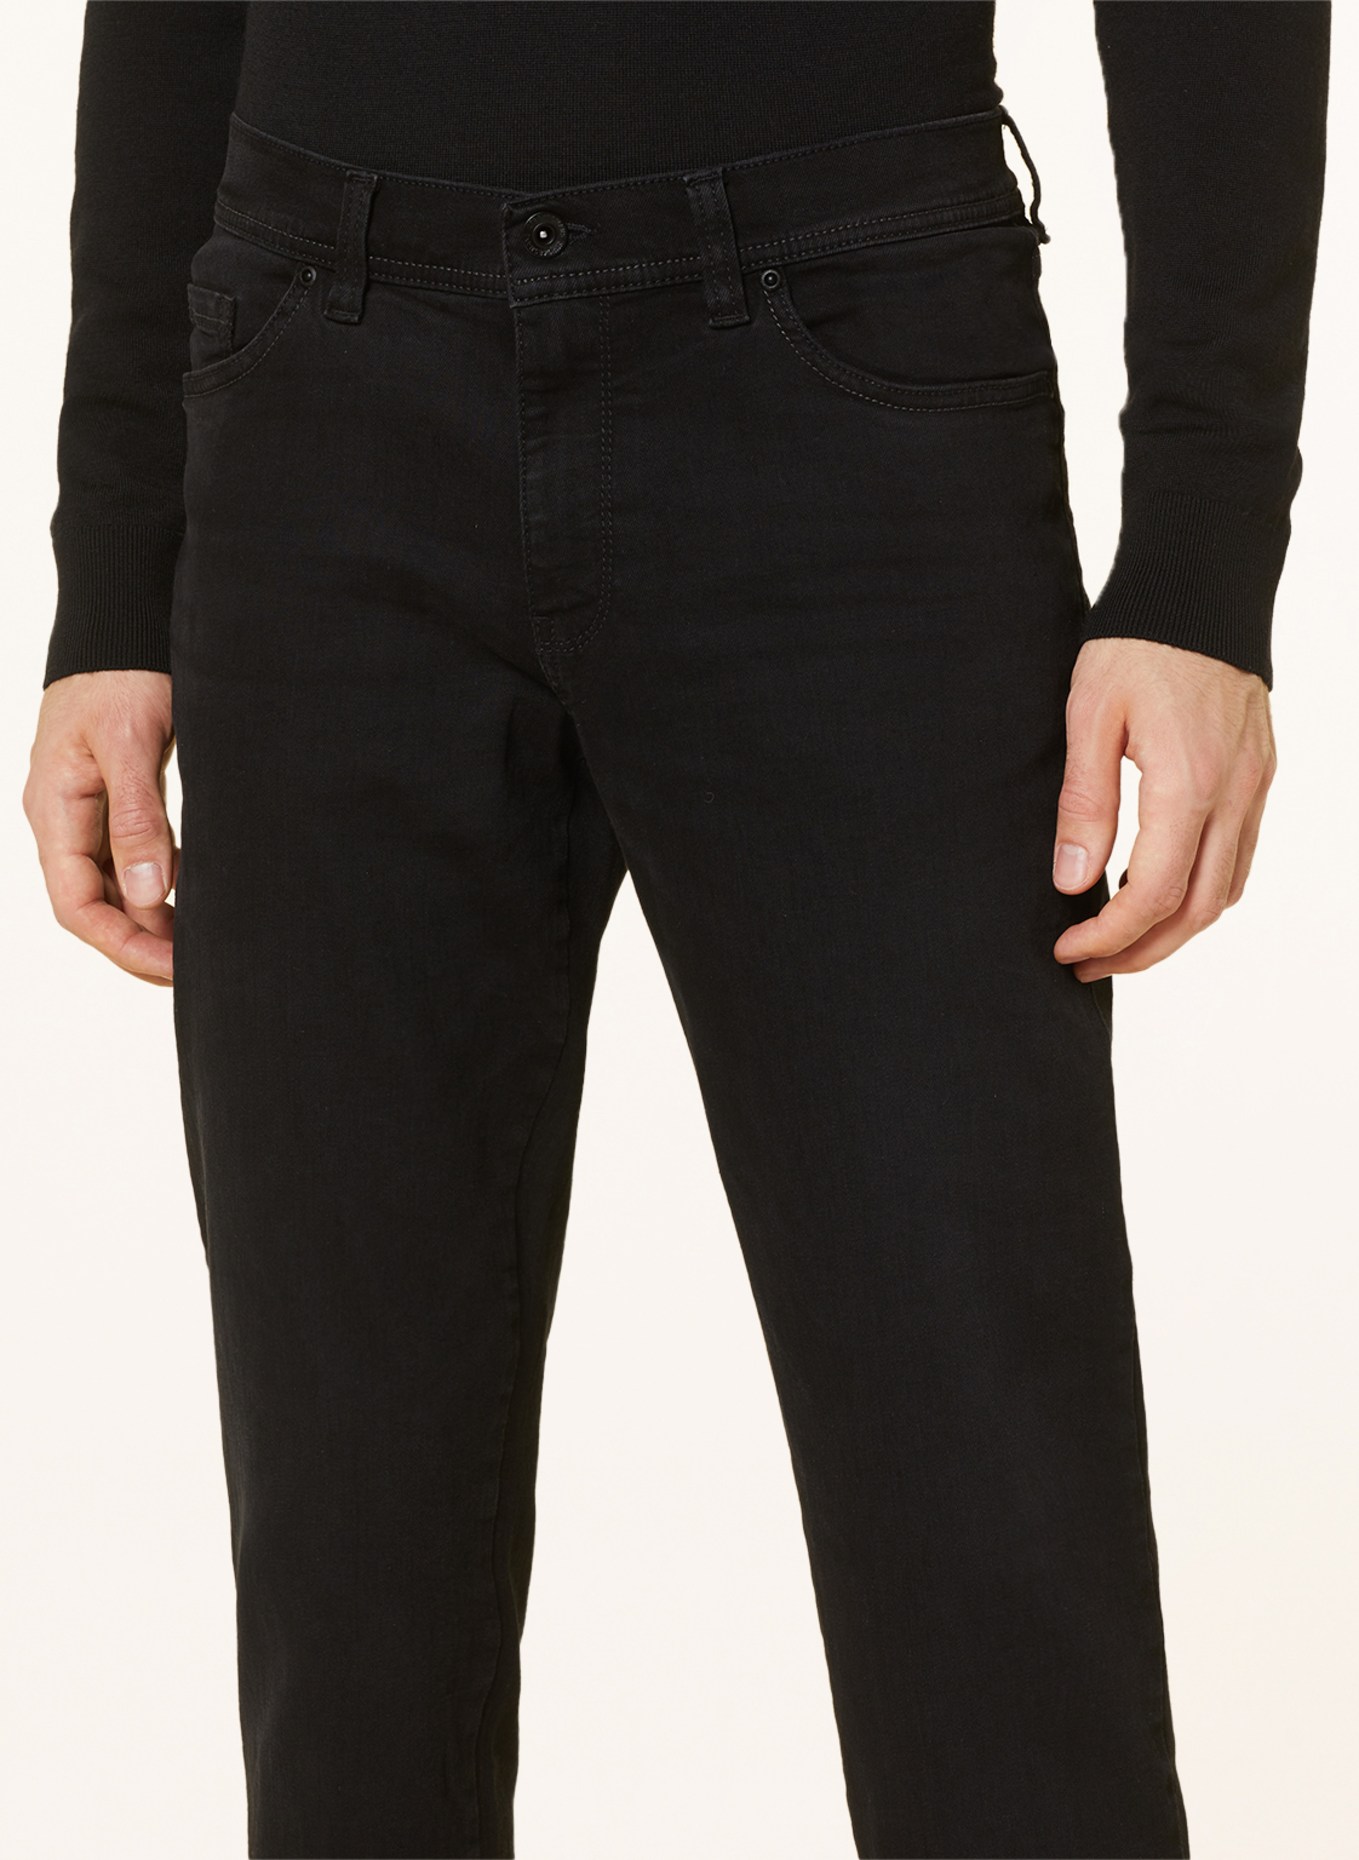 STROKESMAN'S Jeans Slim Fit, Farbe: 6000 black (Bild 5)